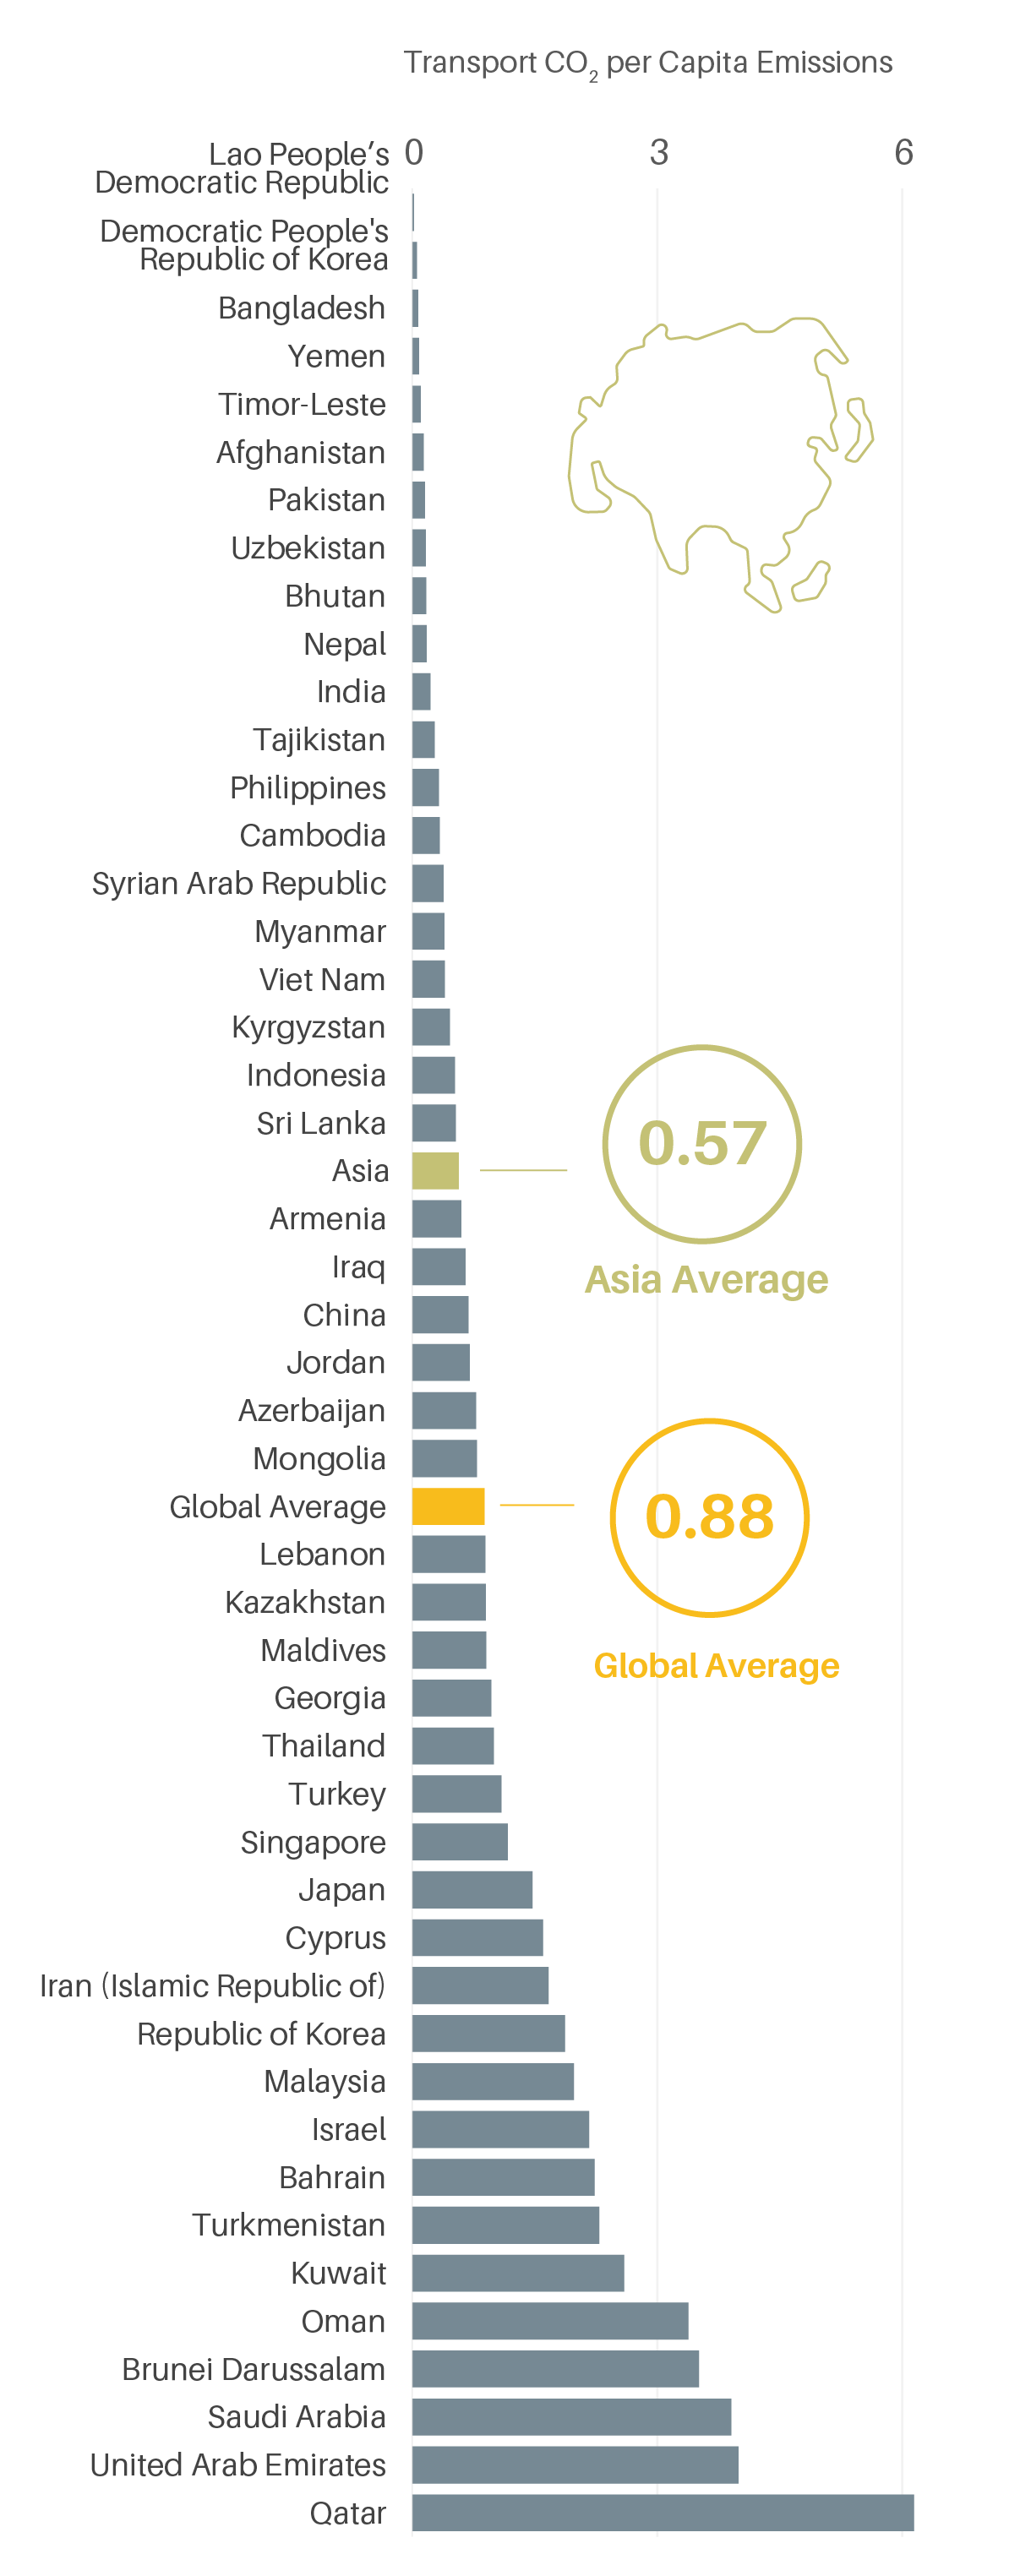 Per capita transport CO2 emissions in Asia, 2019